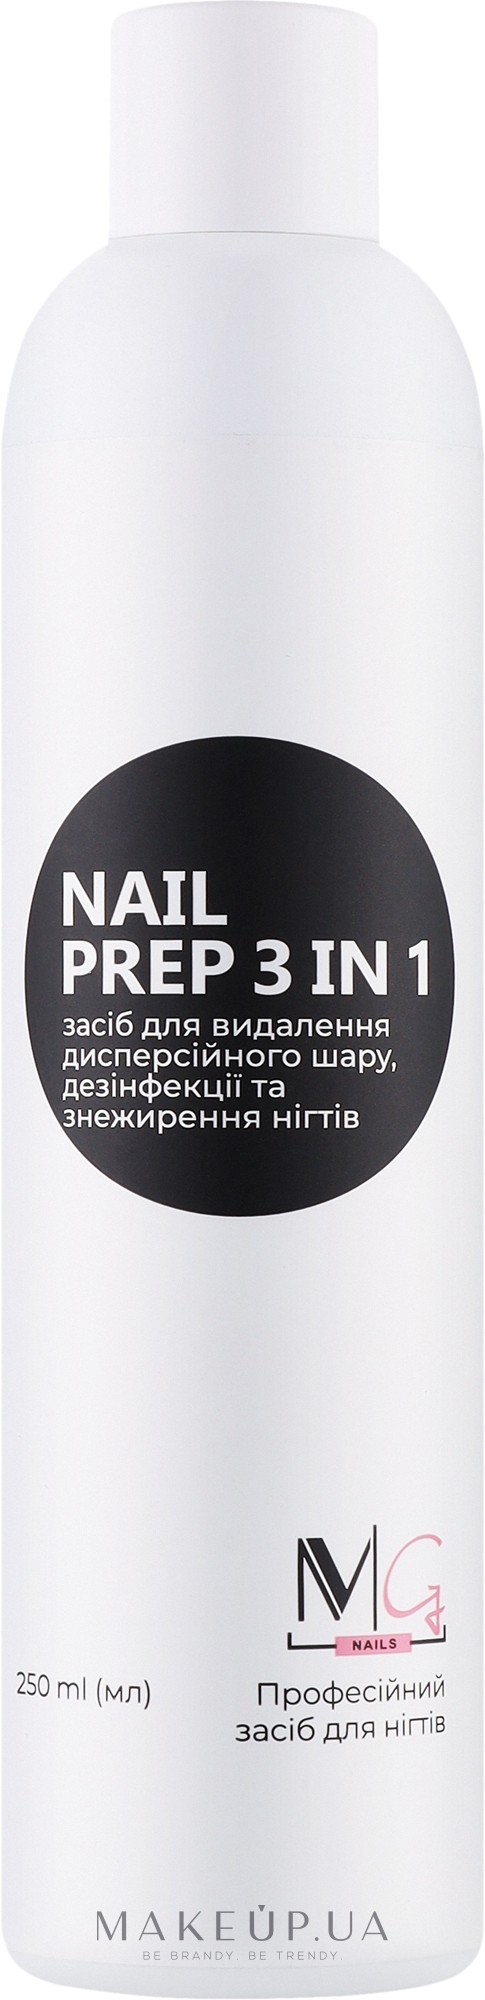 Засіб для знежирення та зняття липкості - MG Nail Prep 3 in 1 — фото 250ml